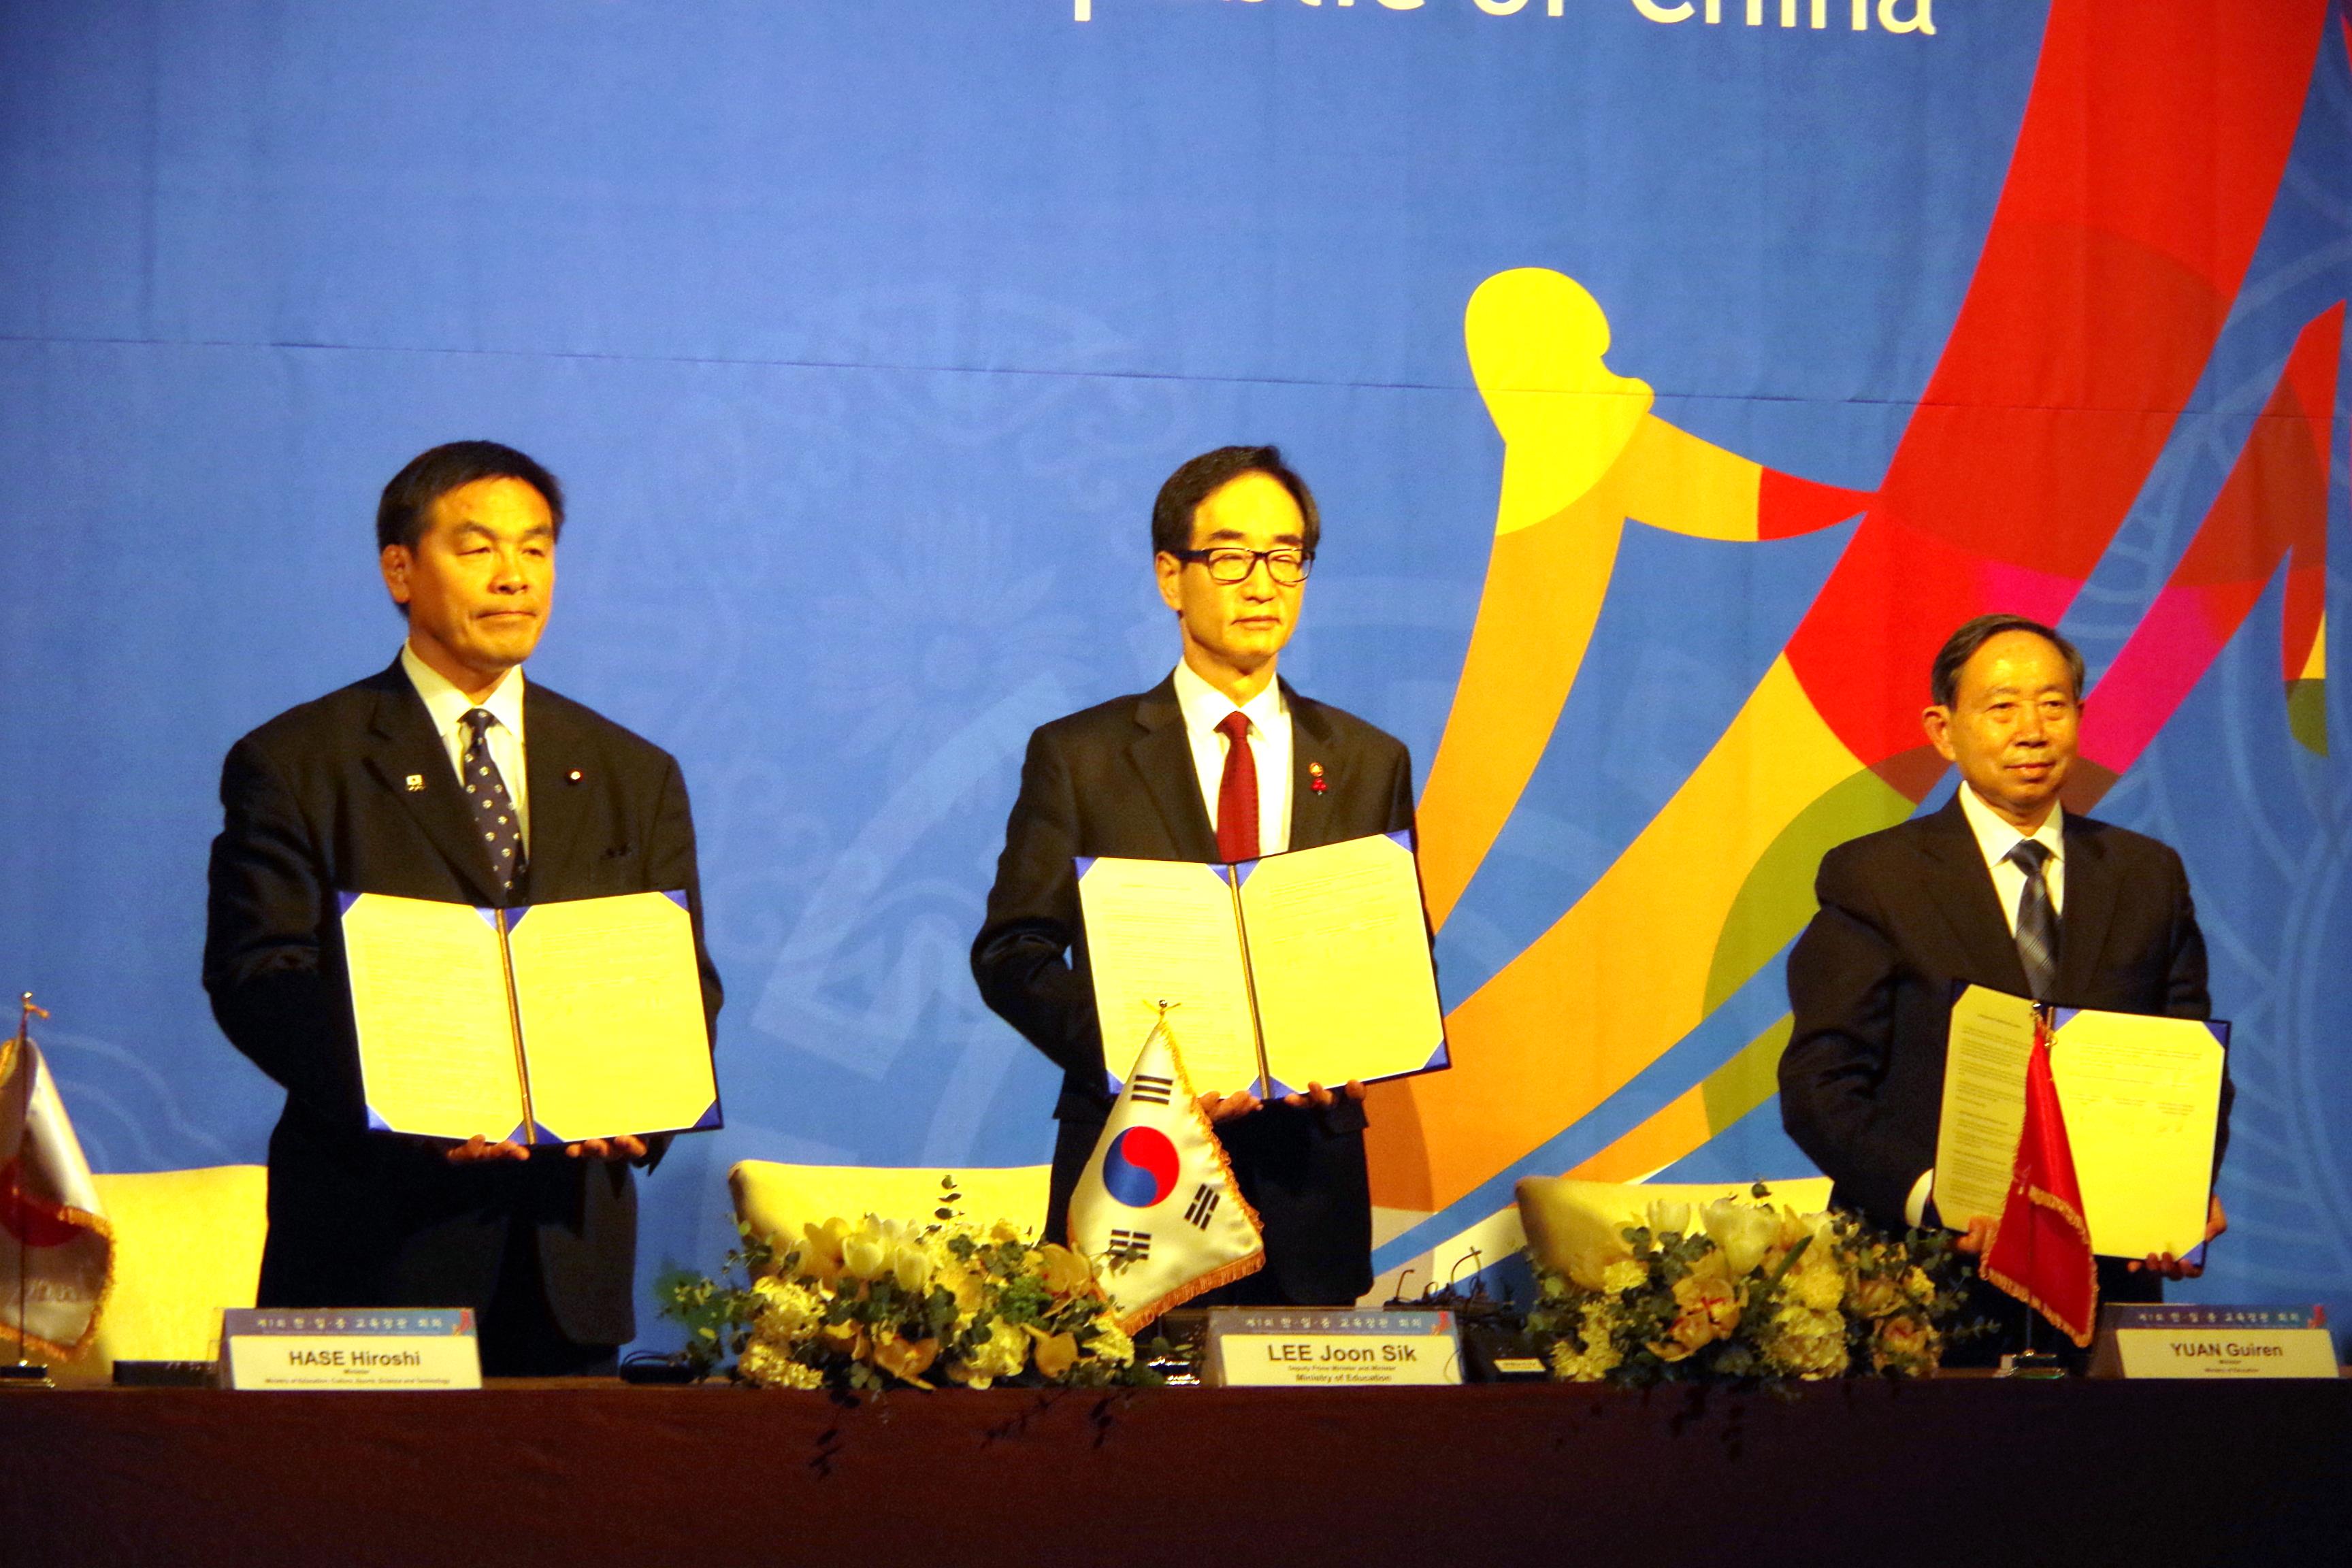 「教育交流のためのソウル宣言」署名式